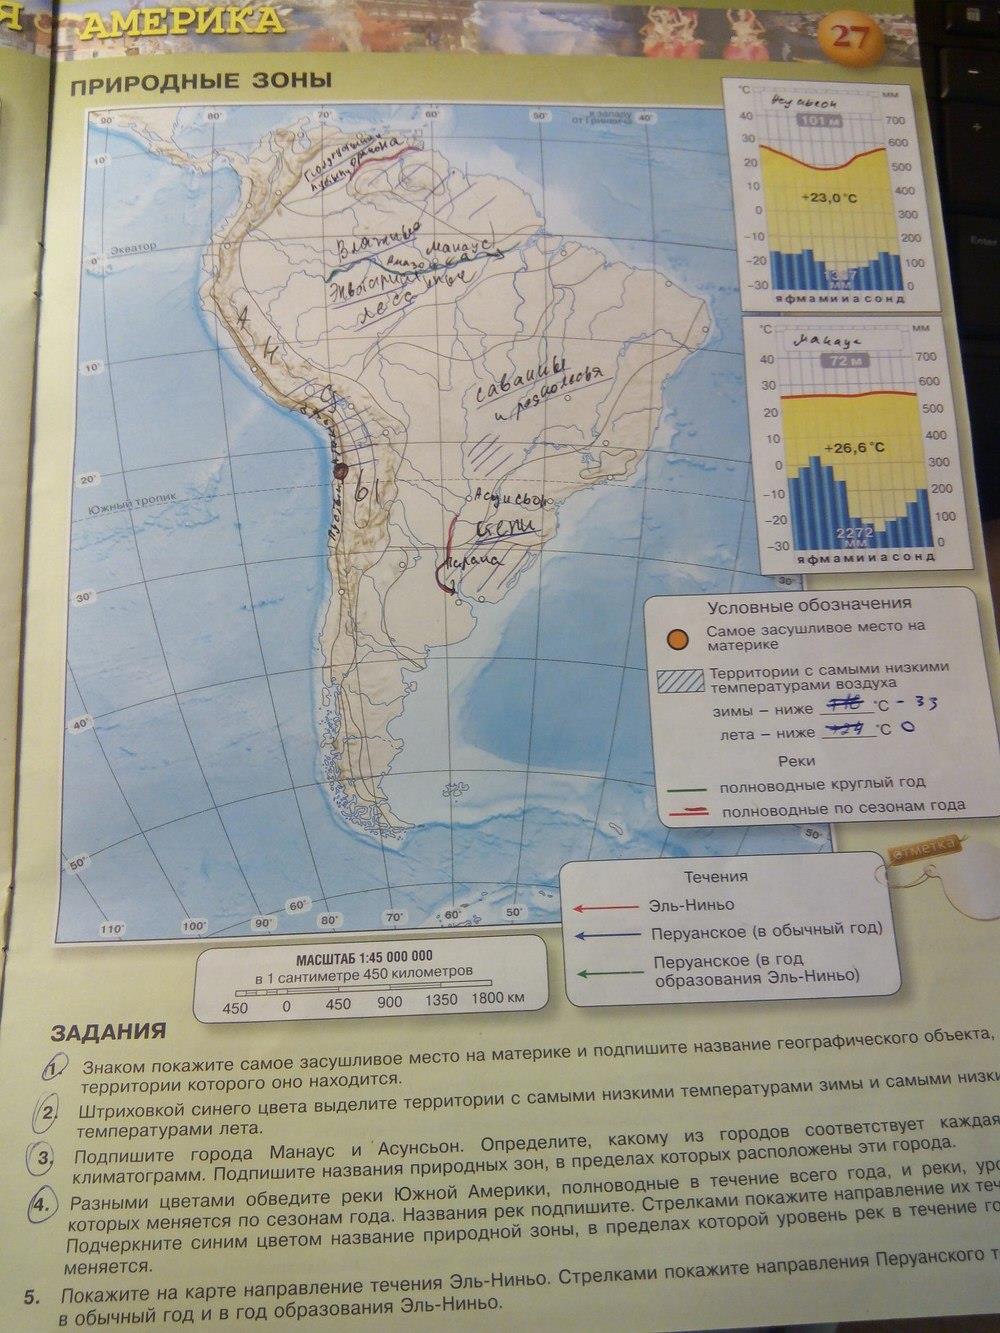 География 7 класс рабочая тетрадь северная америка. География 7 класс контурные карты стр 27. Карта Южной Америки 7 класс география. Гдз по географии 7 класс карта. Карта по географии 7 класс Южная Америка.